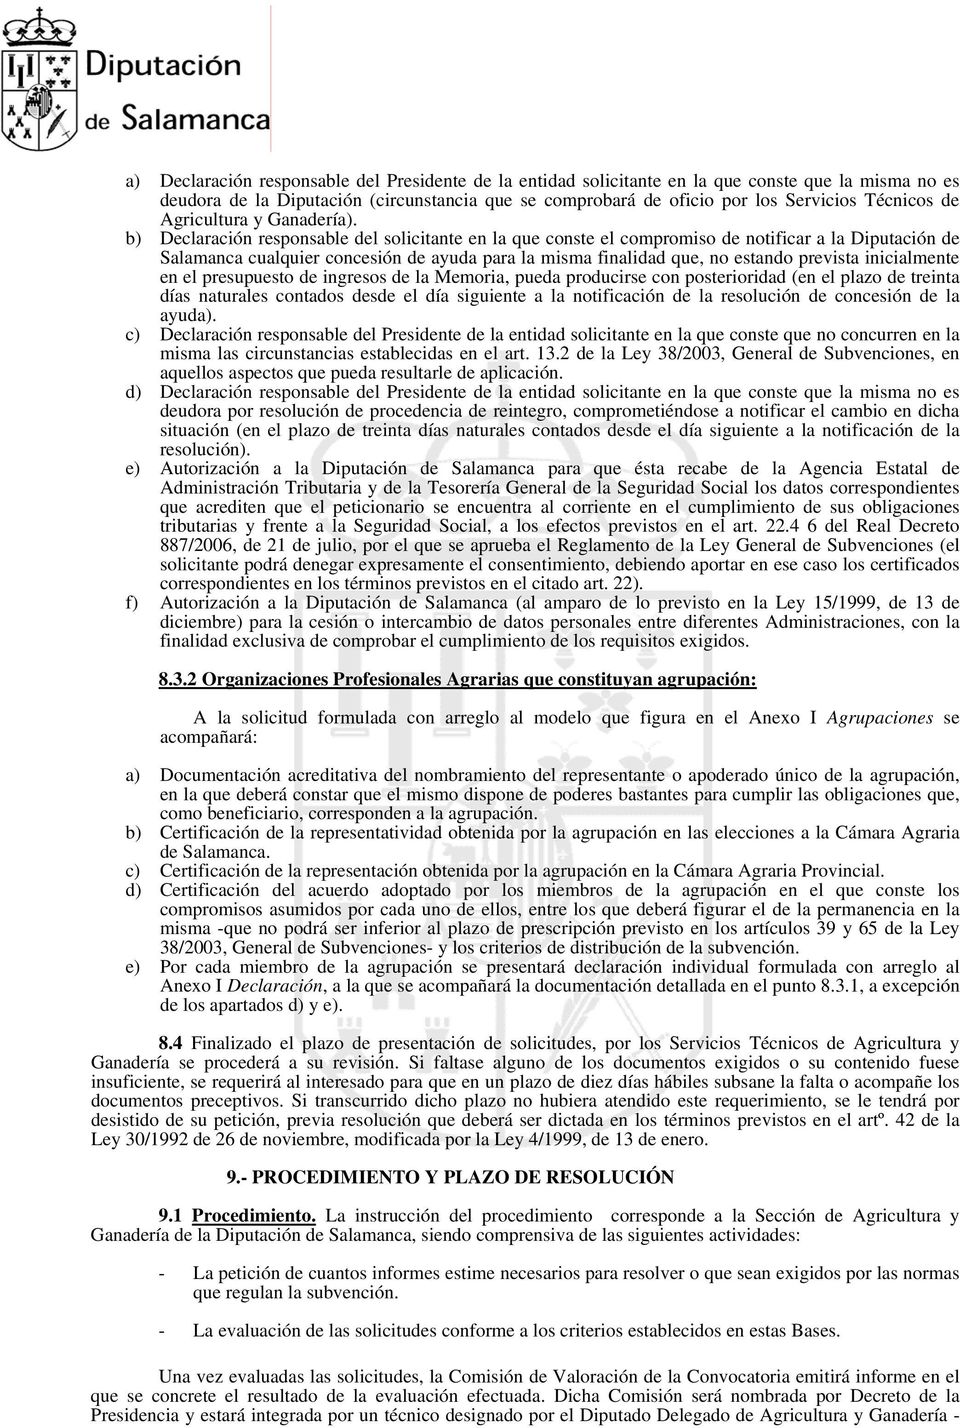 b) Declaración responsable del solicitante en la que conste el compromiso de notificar a la Diputación de Salamanca cualquier concesión de ayuda para la misma finalidad que, no estando prevista